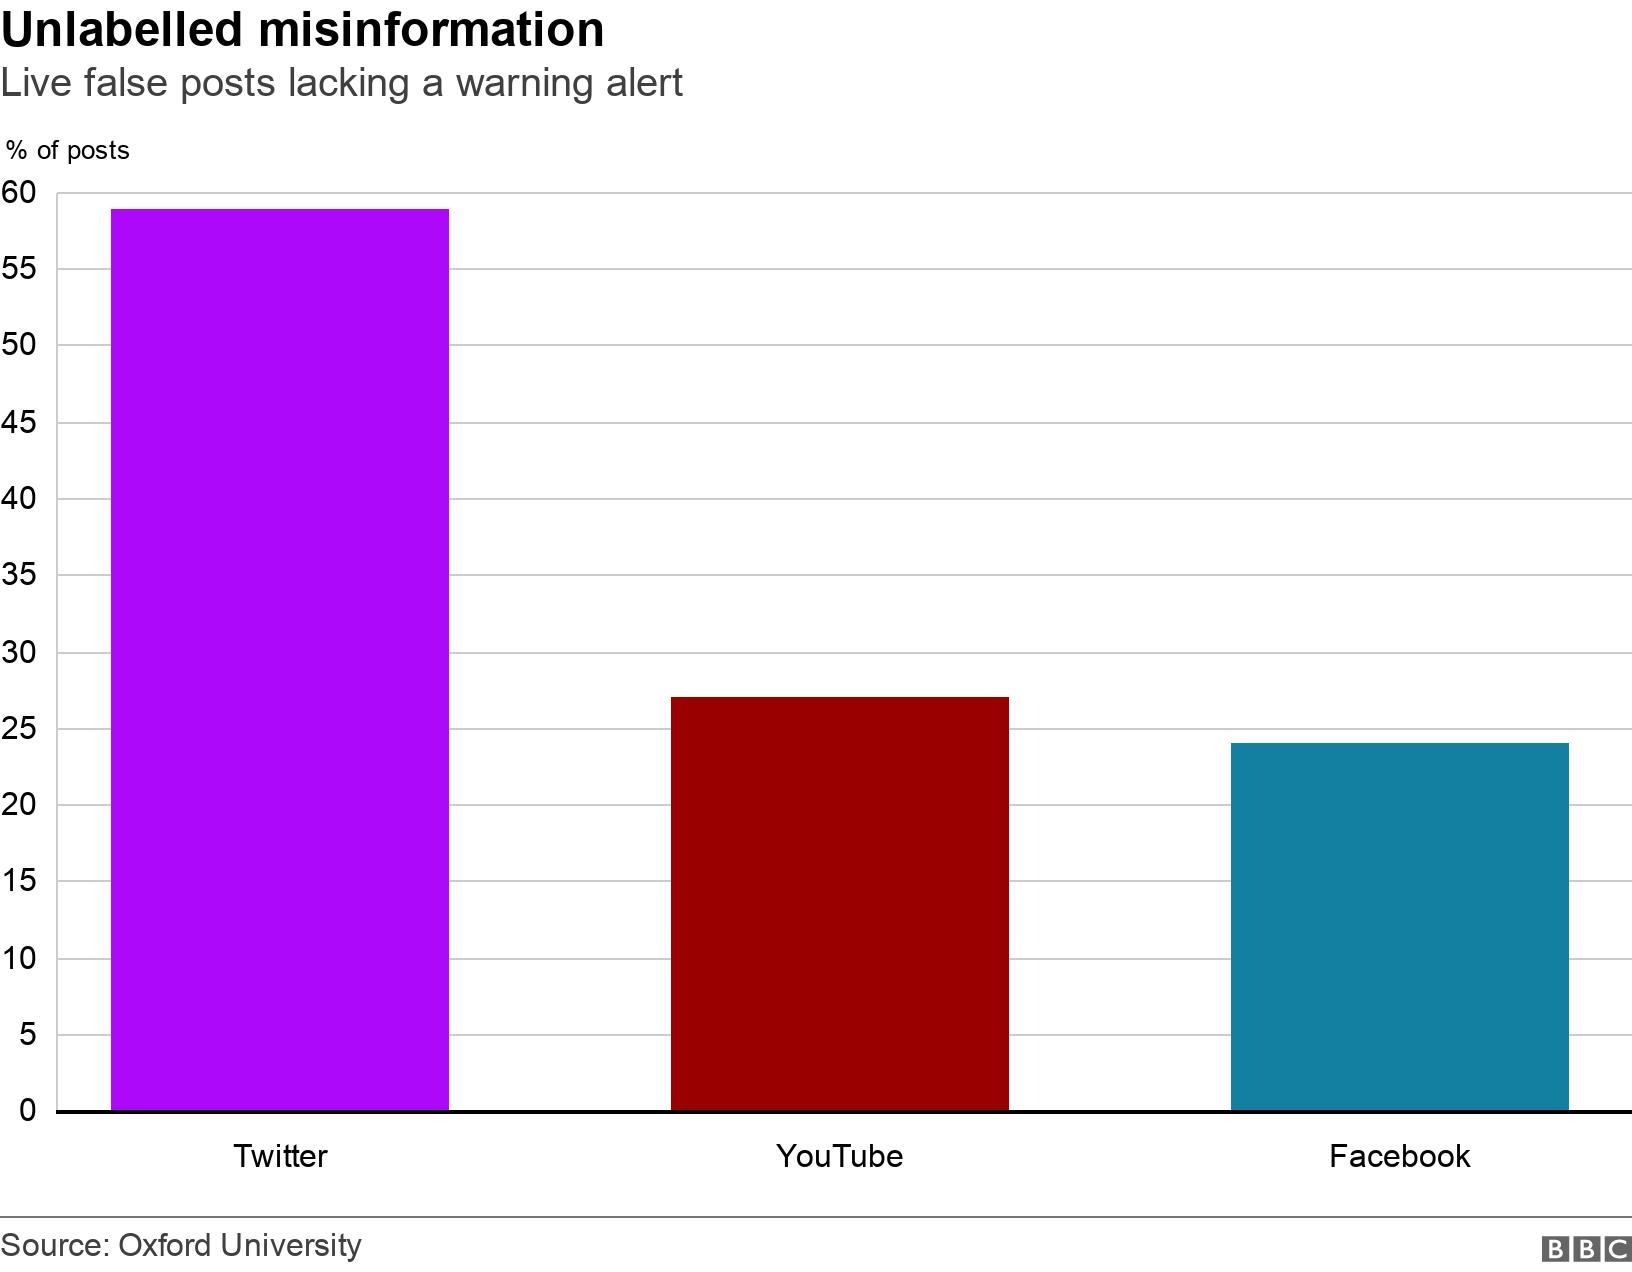 Unlabelled misinformation. Live false posts lacking a warning alert. Live false posts that lack a warning alert:
Twitter: 59%
YouTube: 27%
Facebook: 24% .